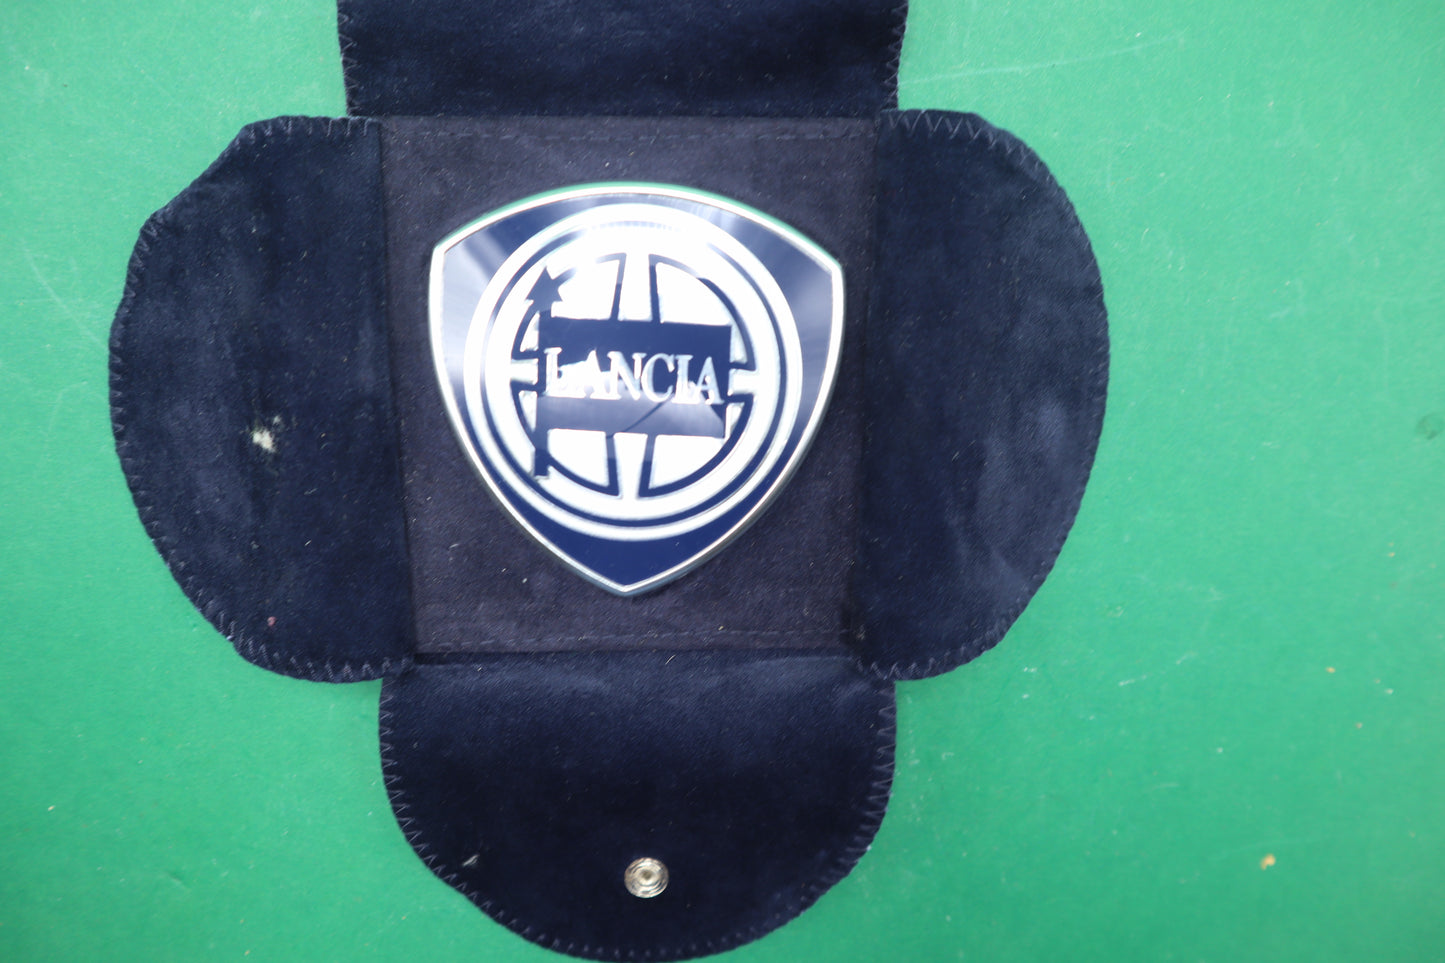 Vintage Lancia Car Emblem  Enamel logo with Velvet pouch paper holder